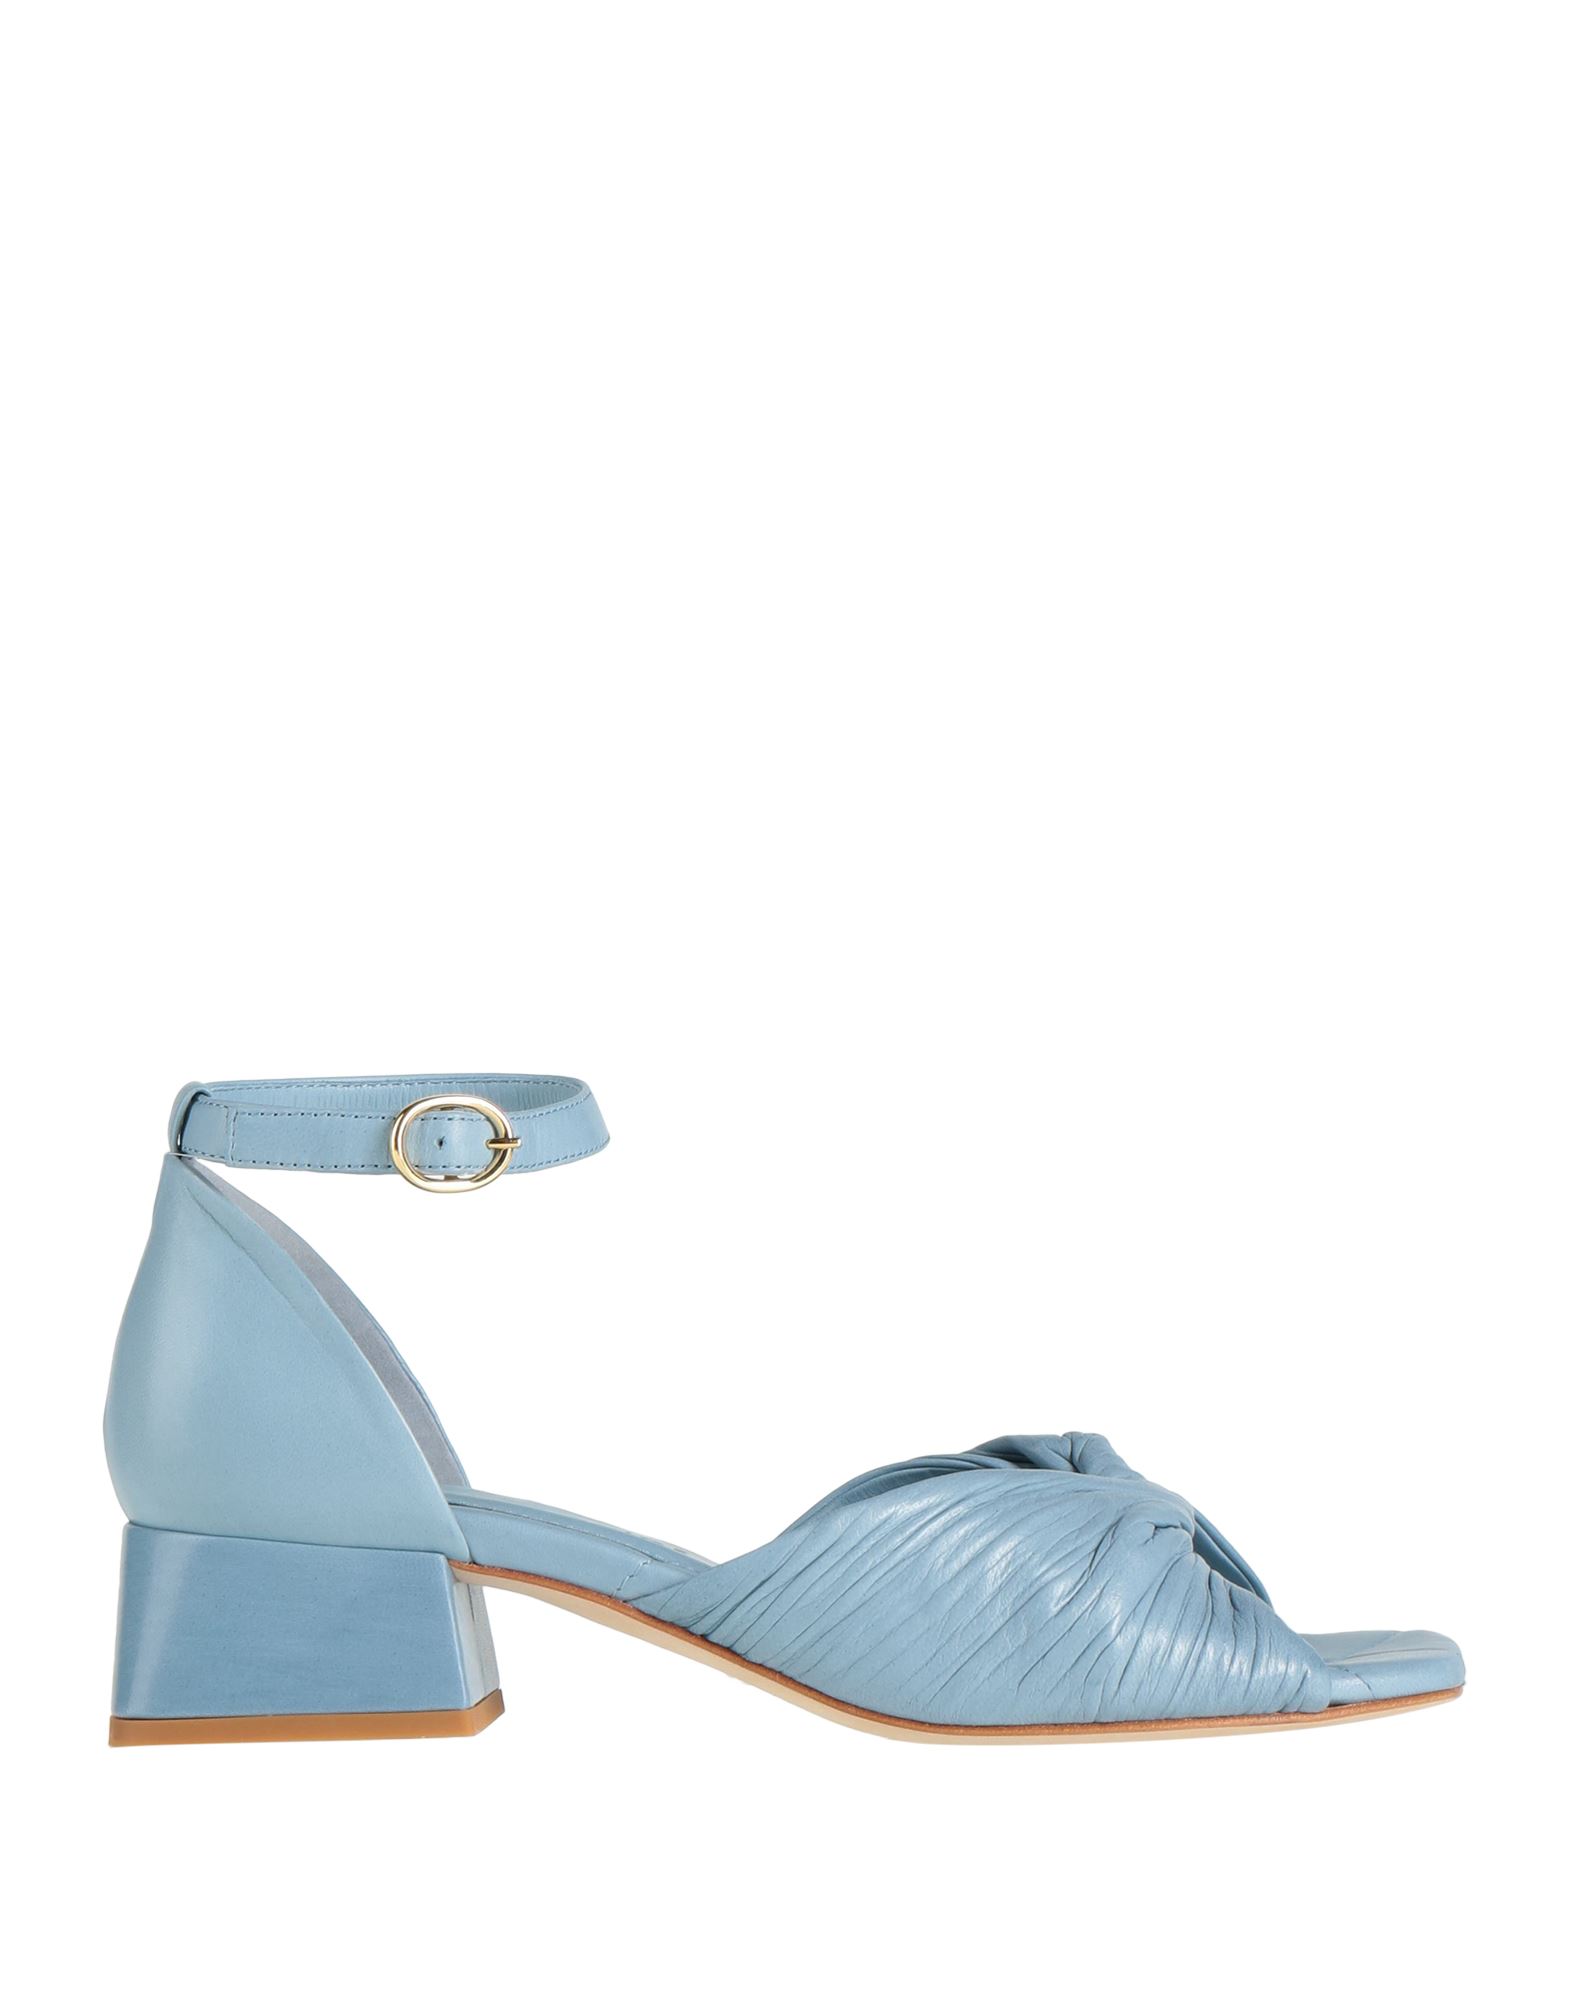 Shop Pas De Rouge Woman Sandals Pastel Blue Size 8 Soft Leather